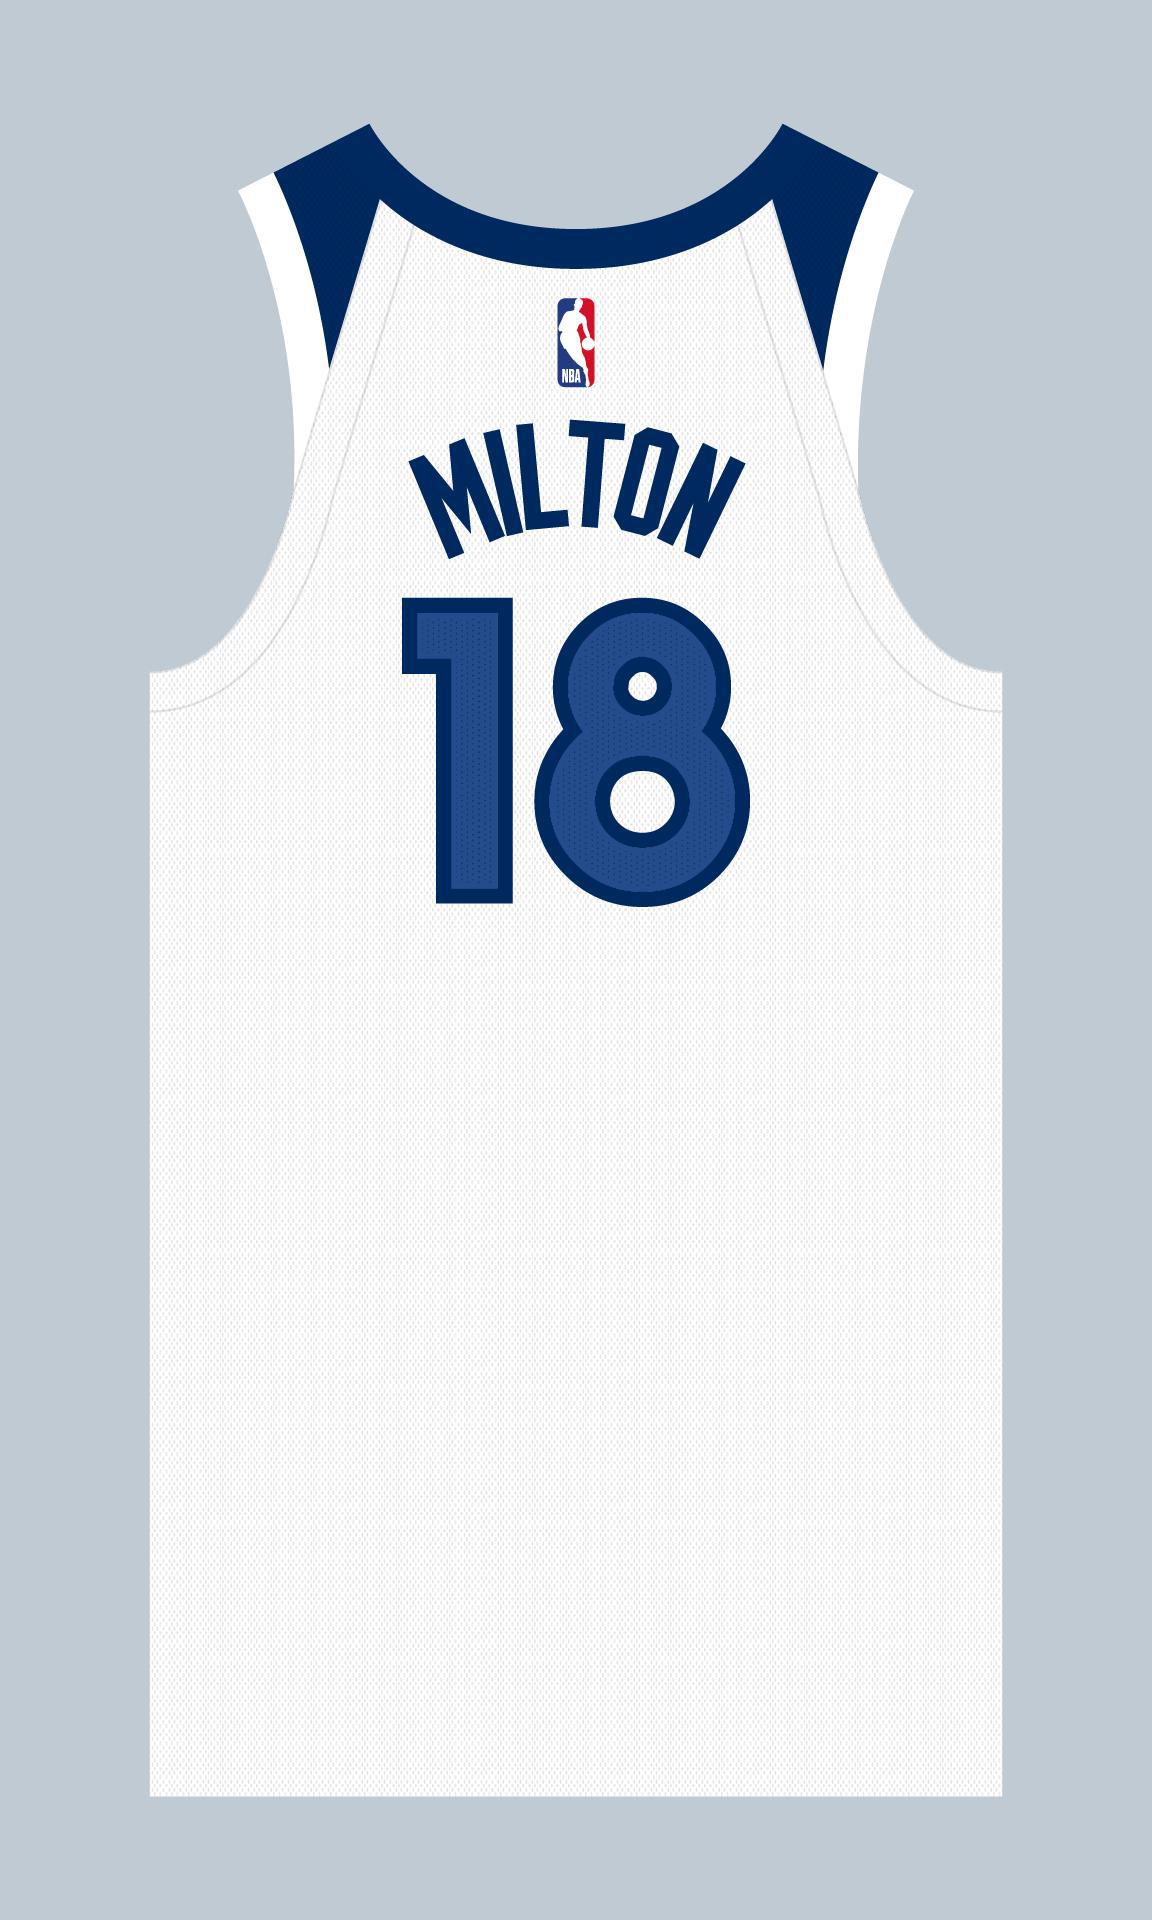 上赛季效力于76人的谢克·米尔顿选择了森林狼的18号球衣；
上赛季效力于湖人的特